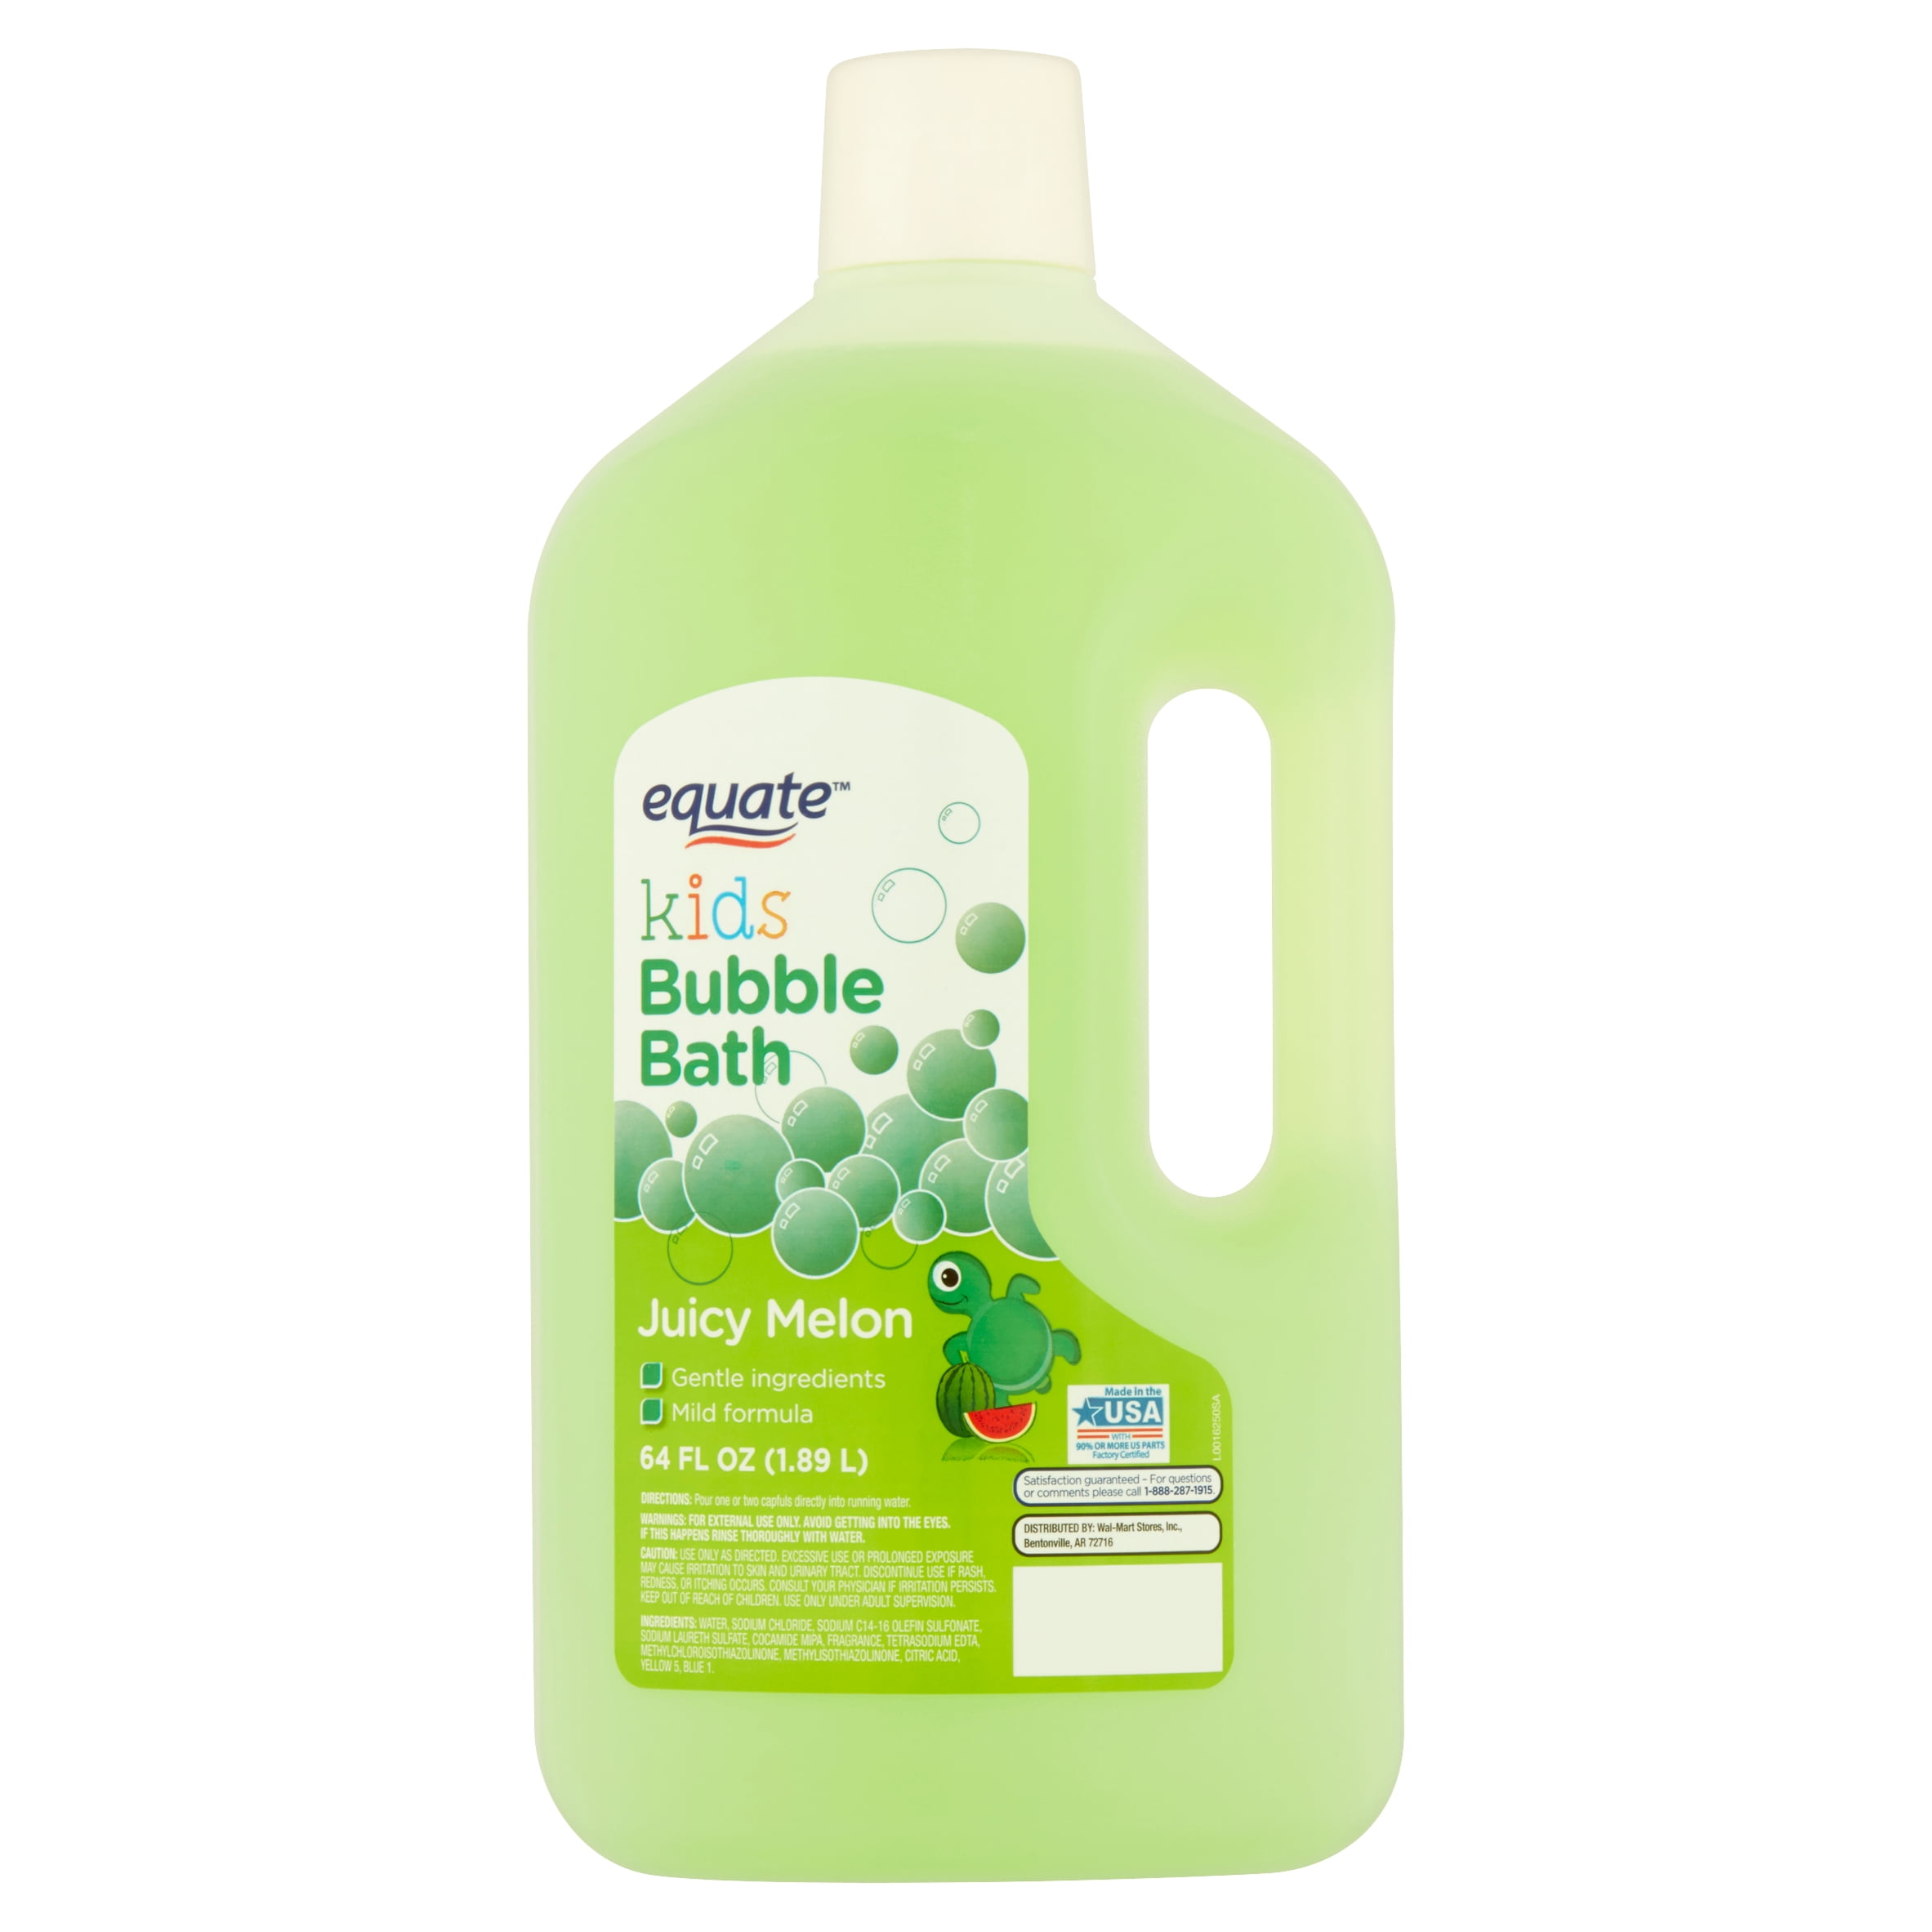 Equate Kids Juicy Melon Bubble Bath, 64 fl oz